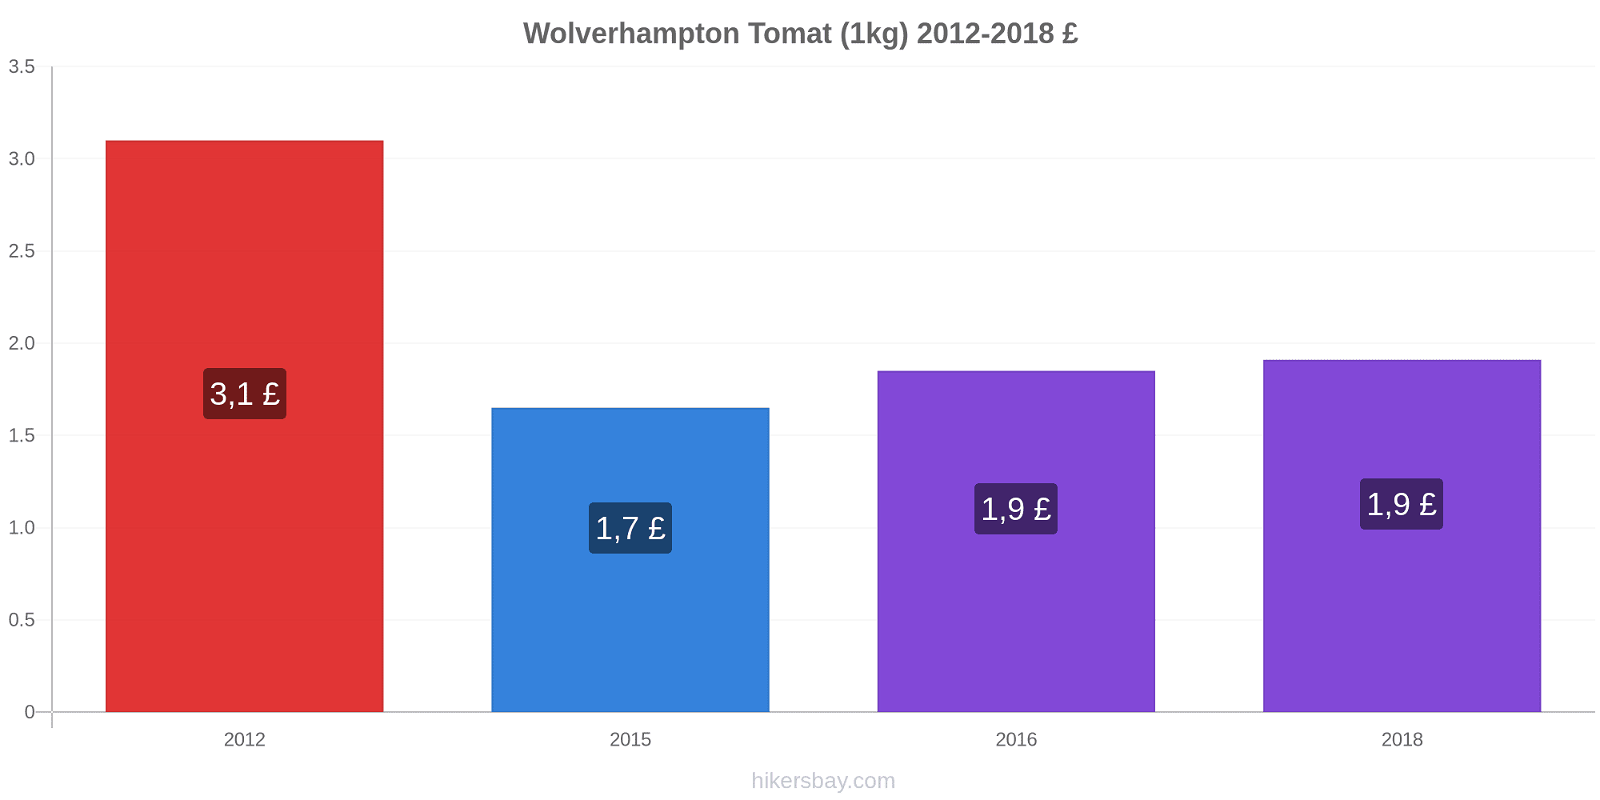 Wolverhampton prisændringer Tomat (1kg) hikersbay.com